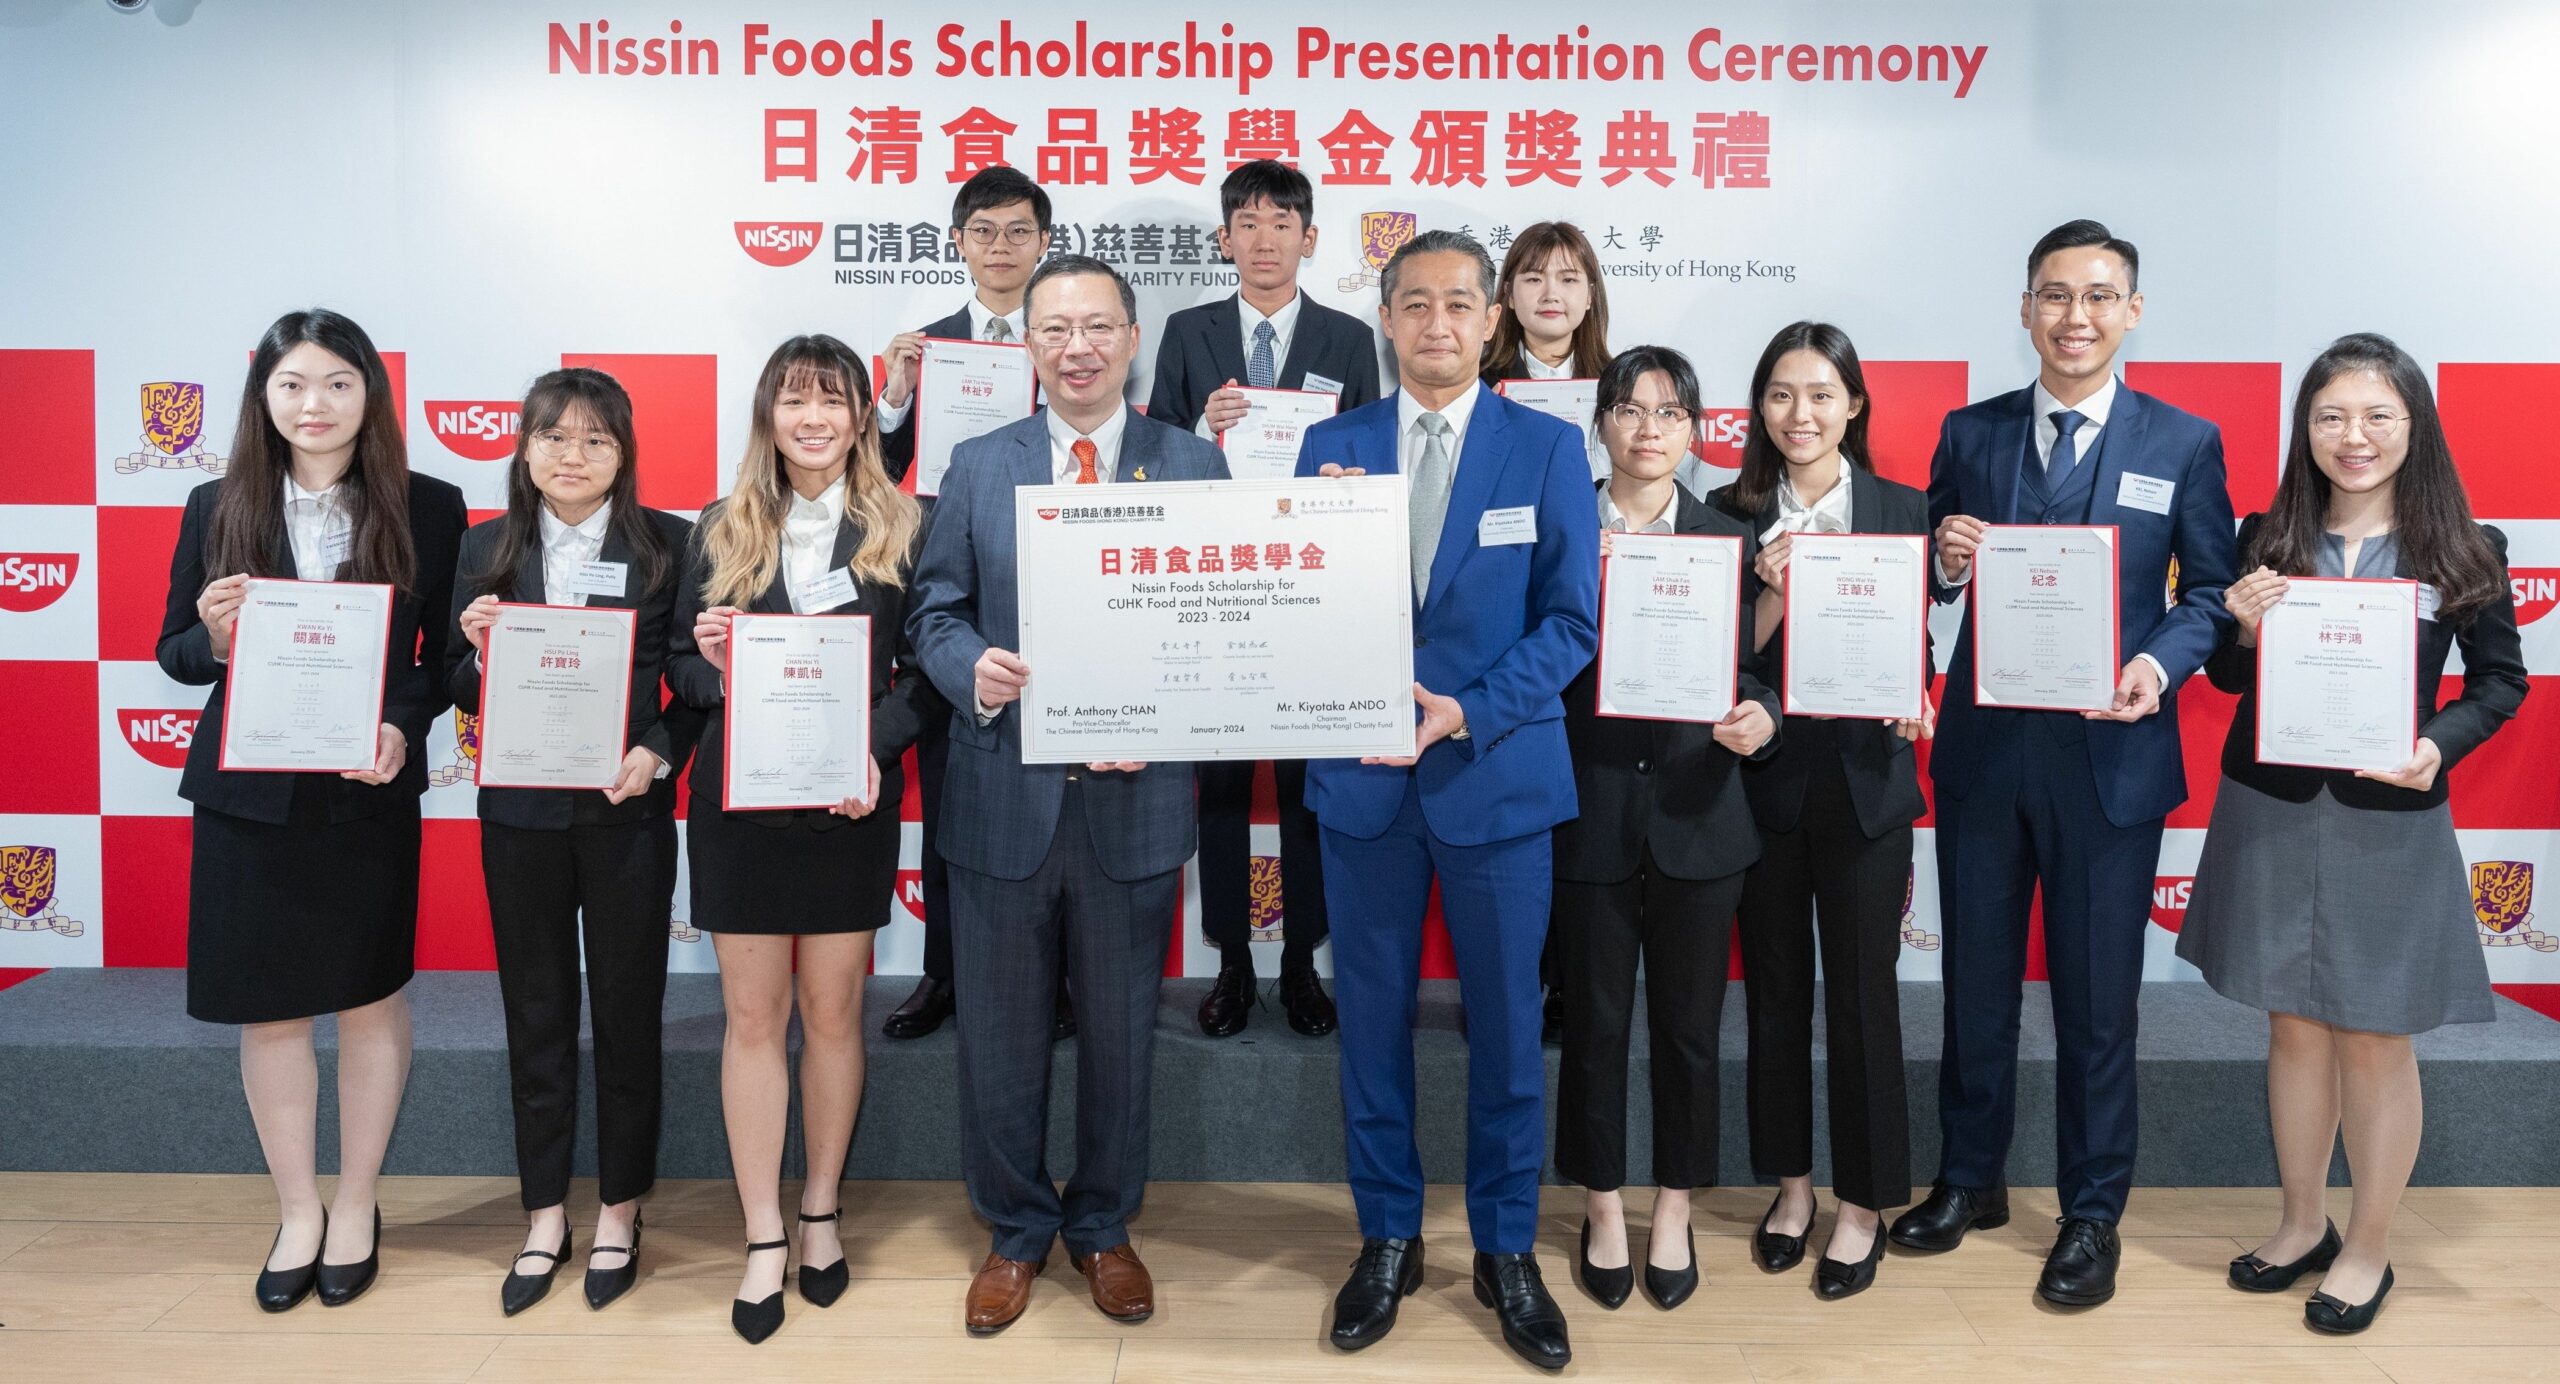 Quỹ từ thiện Nissin Foods (Hồng Kông) tiếp tục hỗ trợ các tài năng trong khoa học thực phẩm và dinh dưỡng